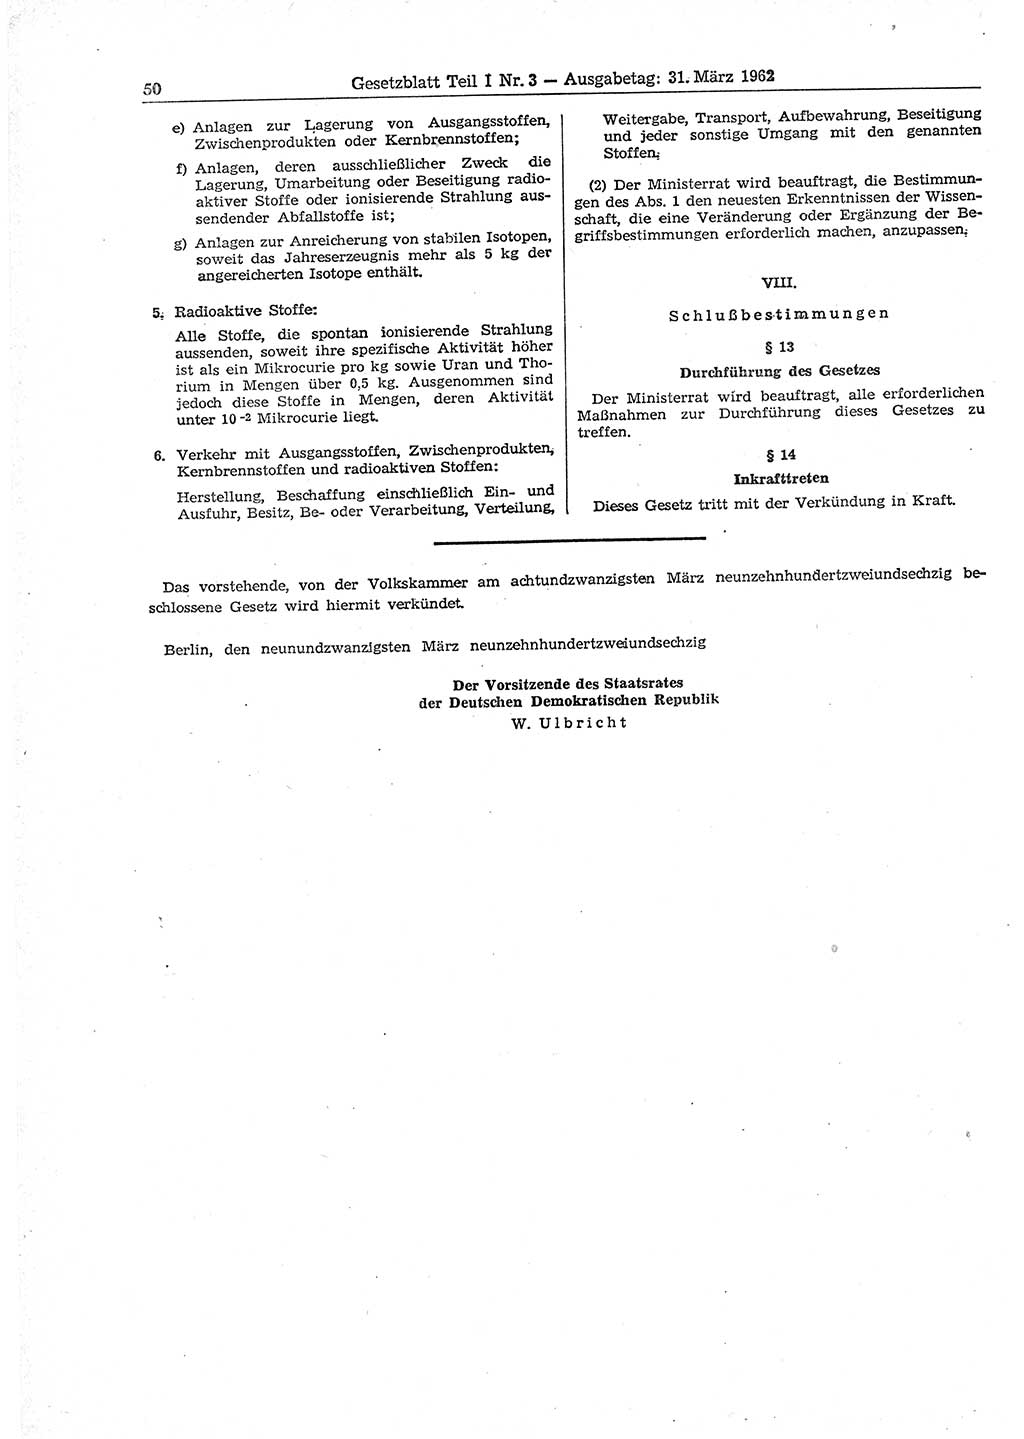 Gesetzblatt (GBl.) der Deutschen Demokratischen Republik (DDR) Teil Ⅰ 1962, Seite 50 (GBl. DDR Ⅰ 1962, S. 50)